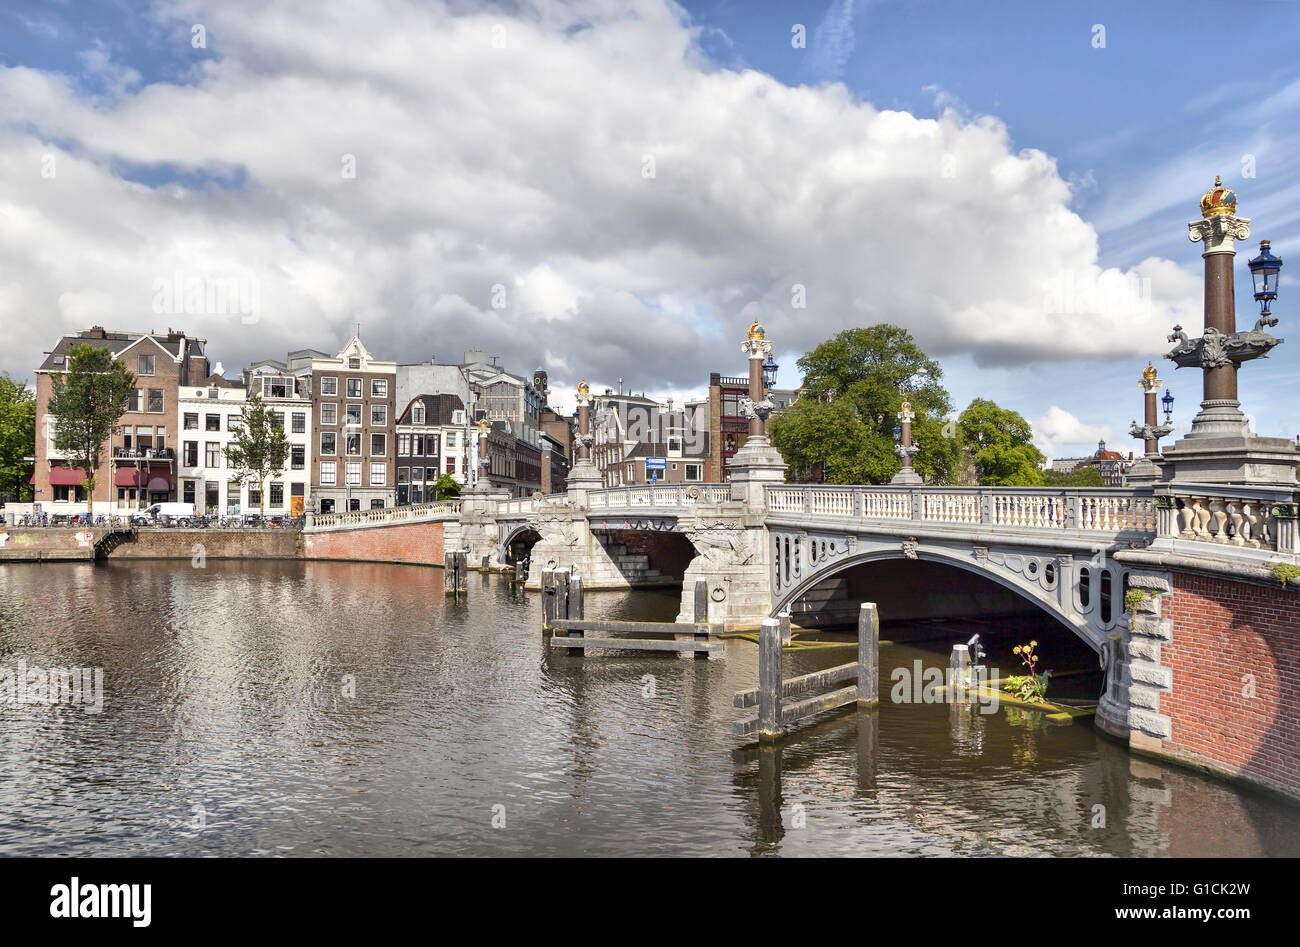 Historische Blauwbrug Brücke (blaue Brücke) in Amsterdam, Niederlande. Es verbindet den Rembrandtplein Bereich mit den Waterlooplein ar Stockfoto